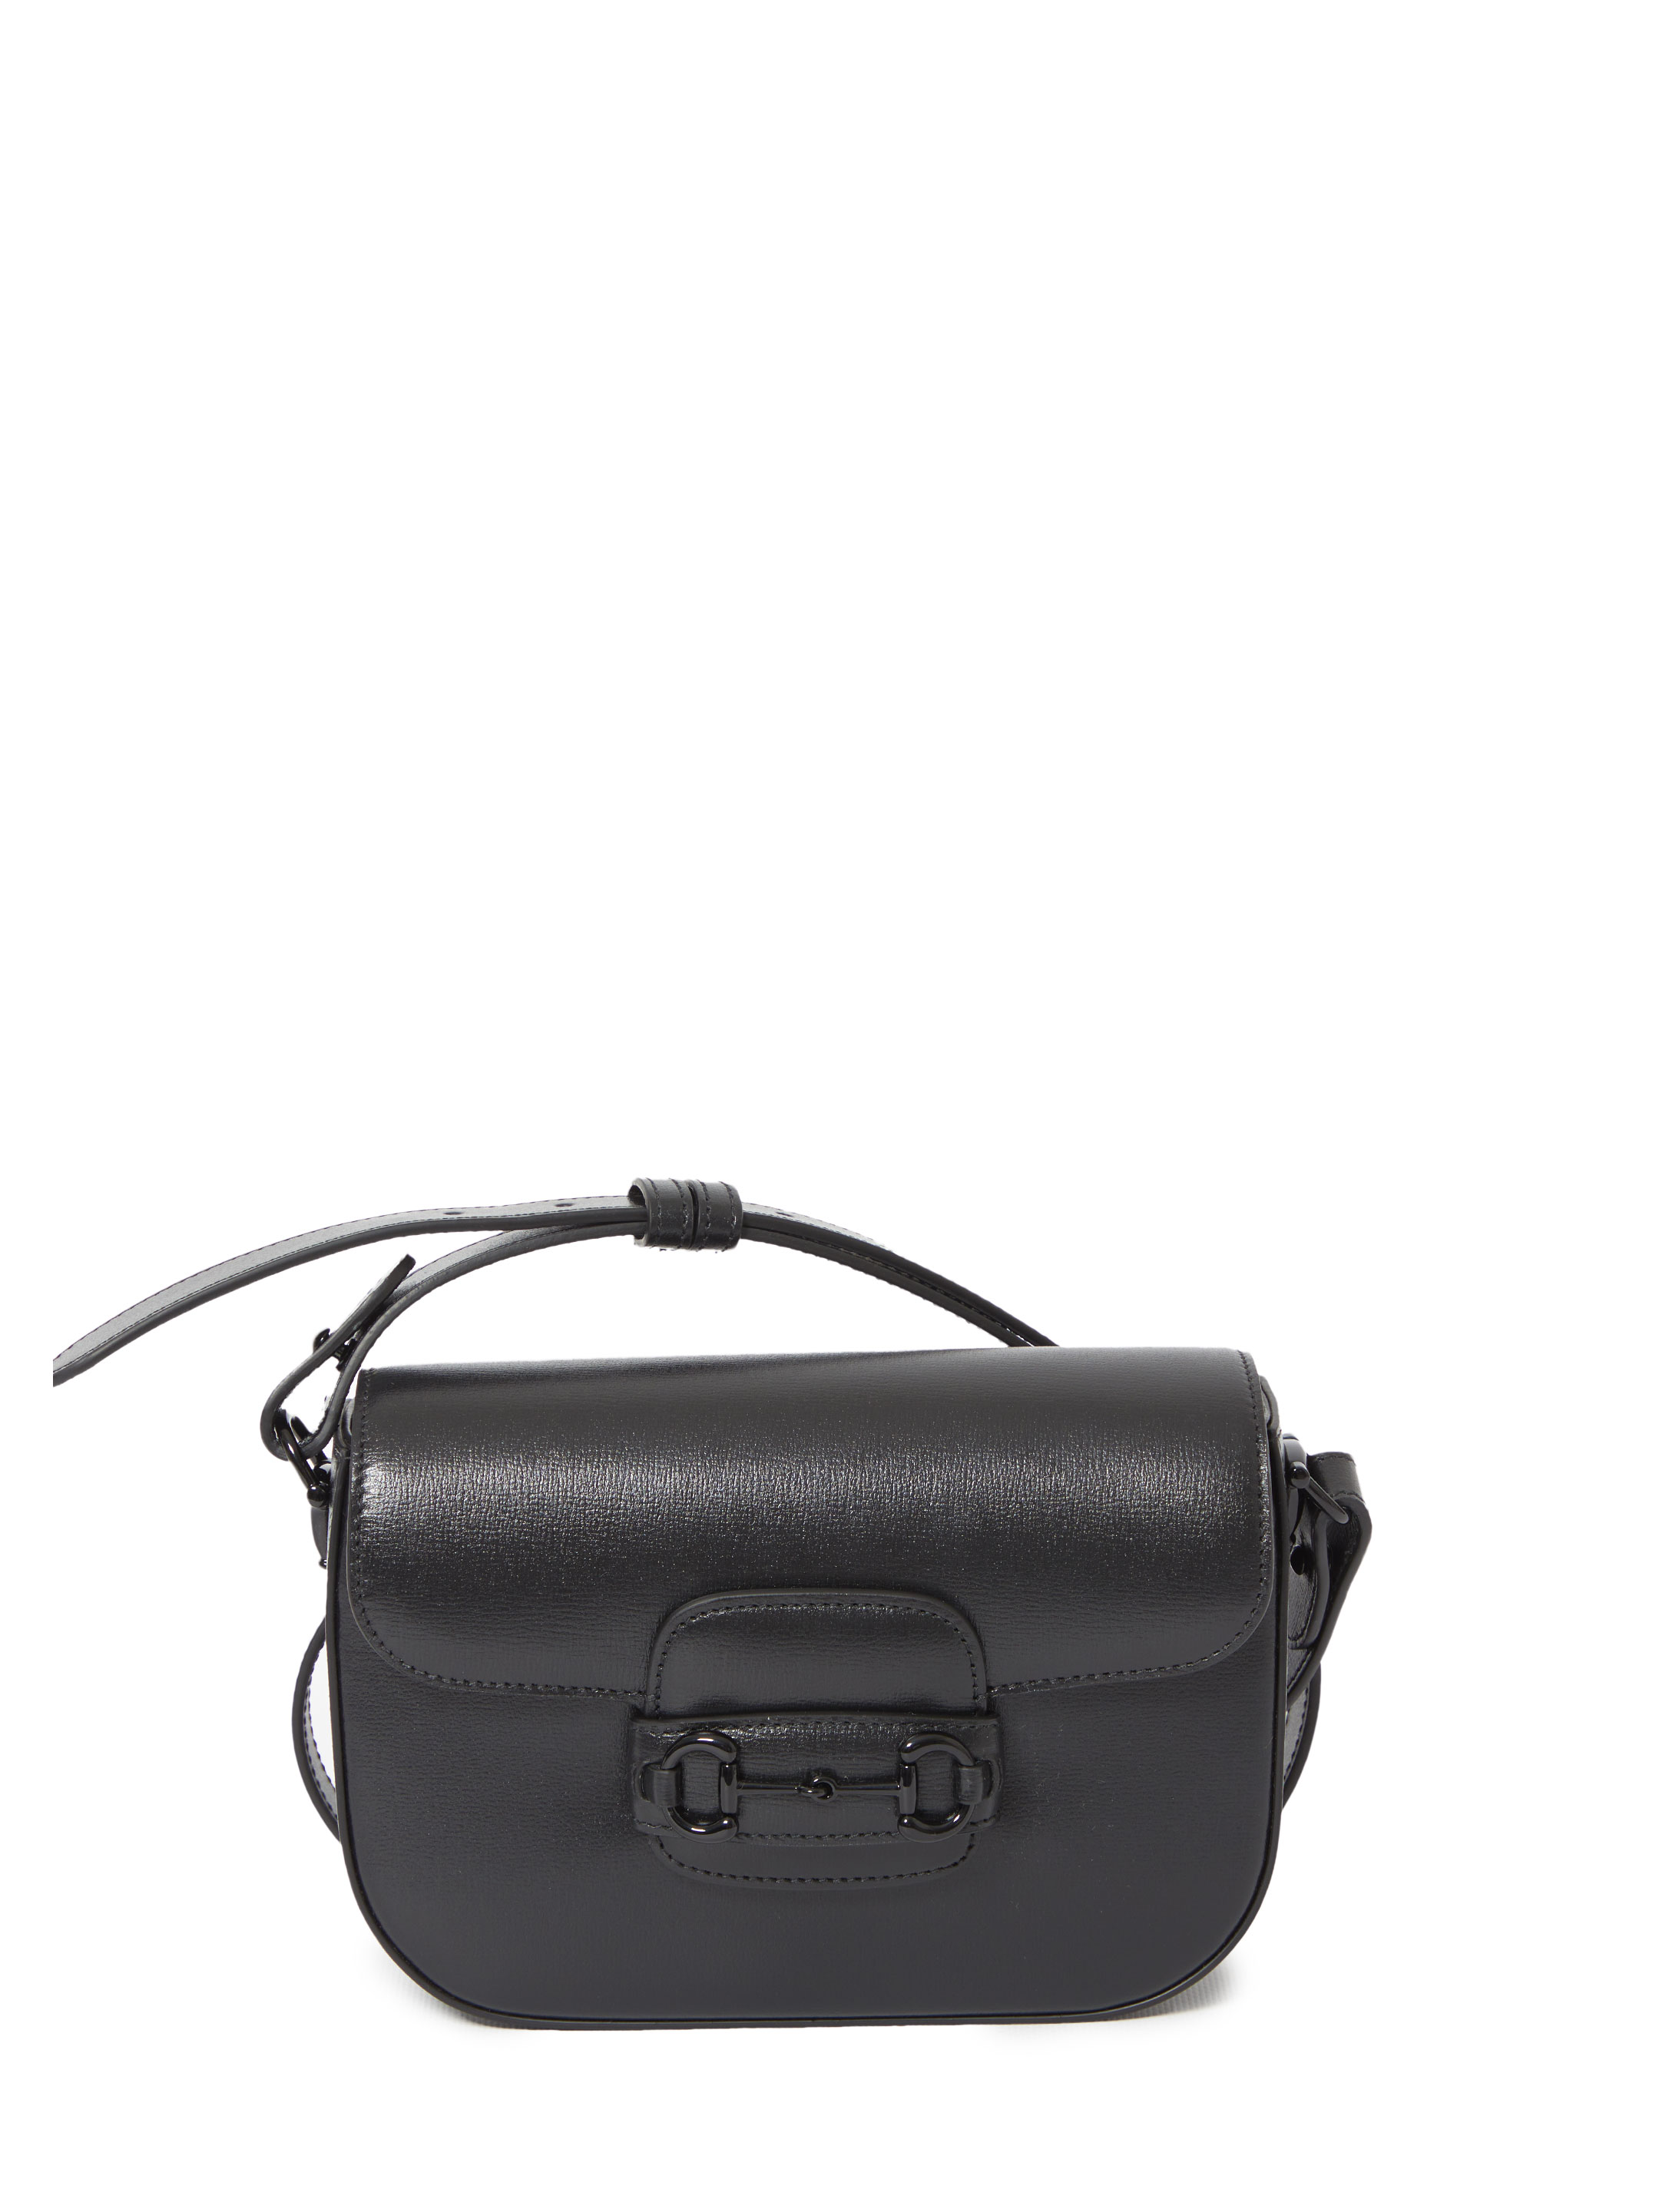 Сумка Gucci Small Gucci Horsebit 1955, черный рюкзак torber t062 brd с одним плечевым ремнем чёрно бордовый